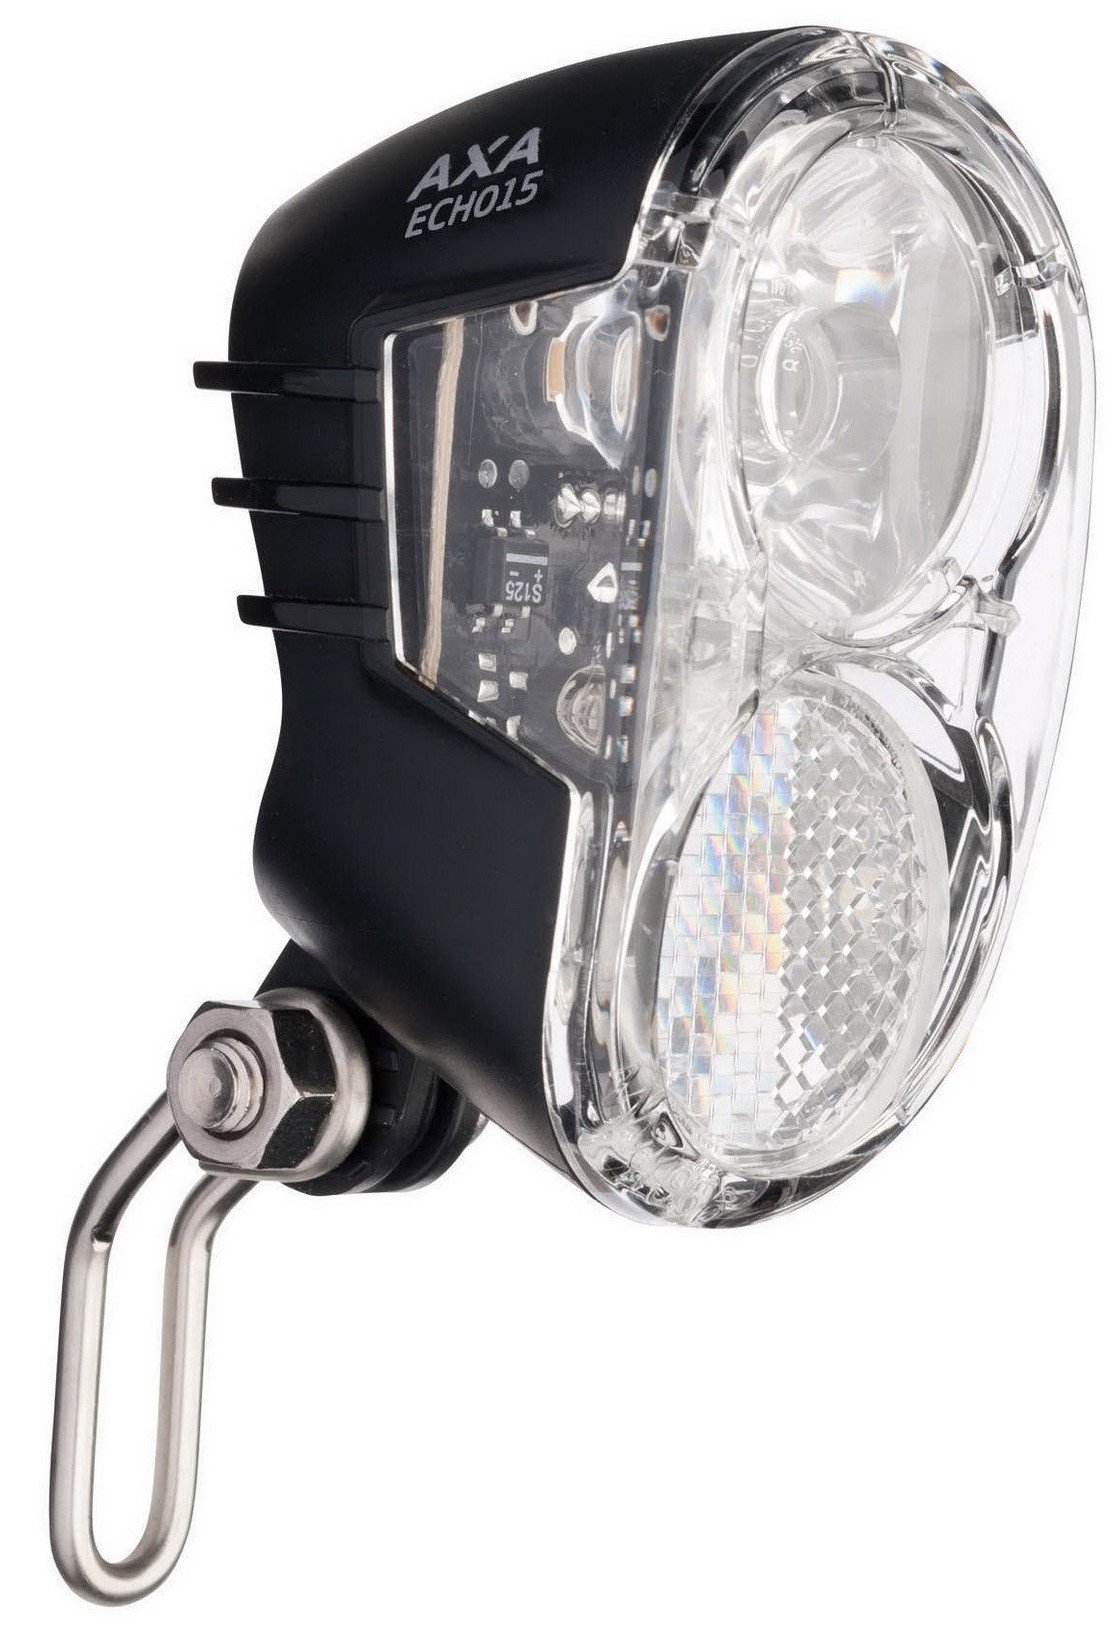 AXA koplamp echo15 switch LED 15 lux dynamo aan/uit